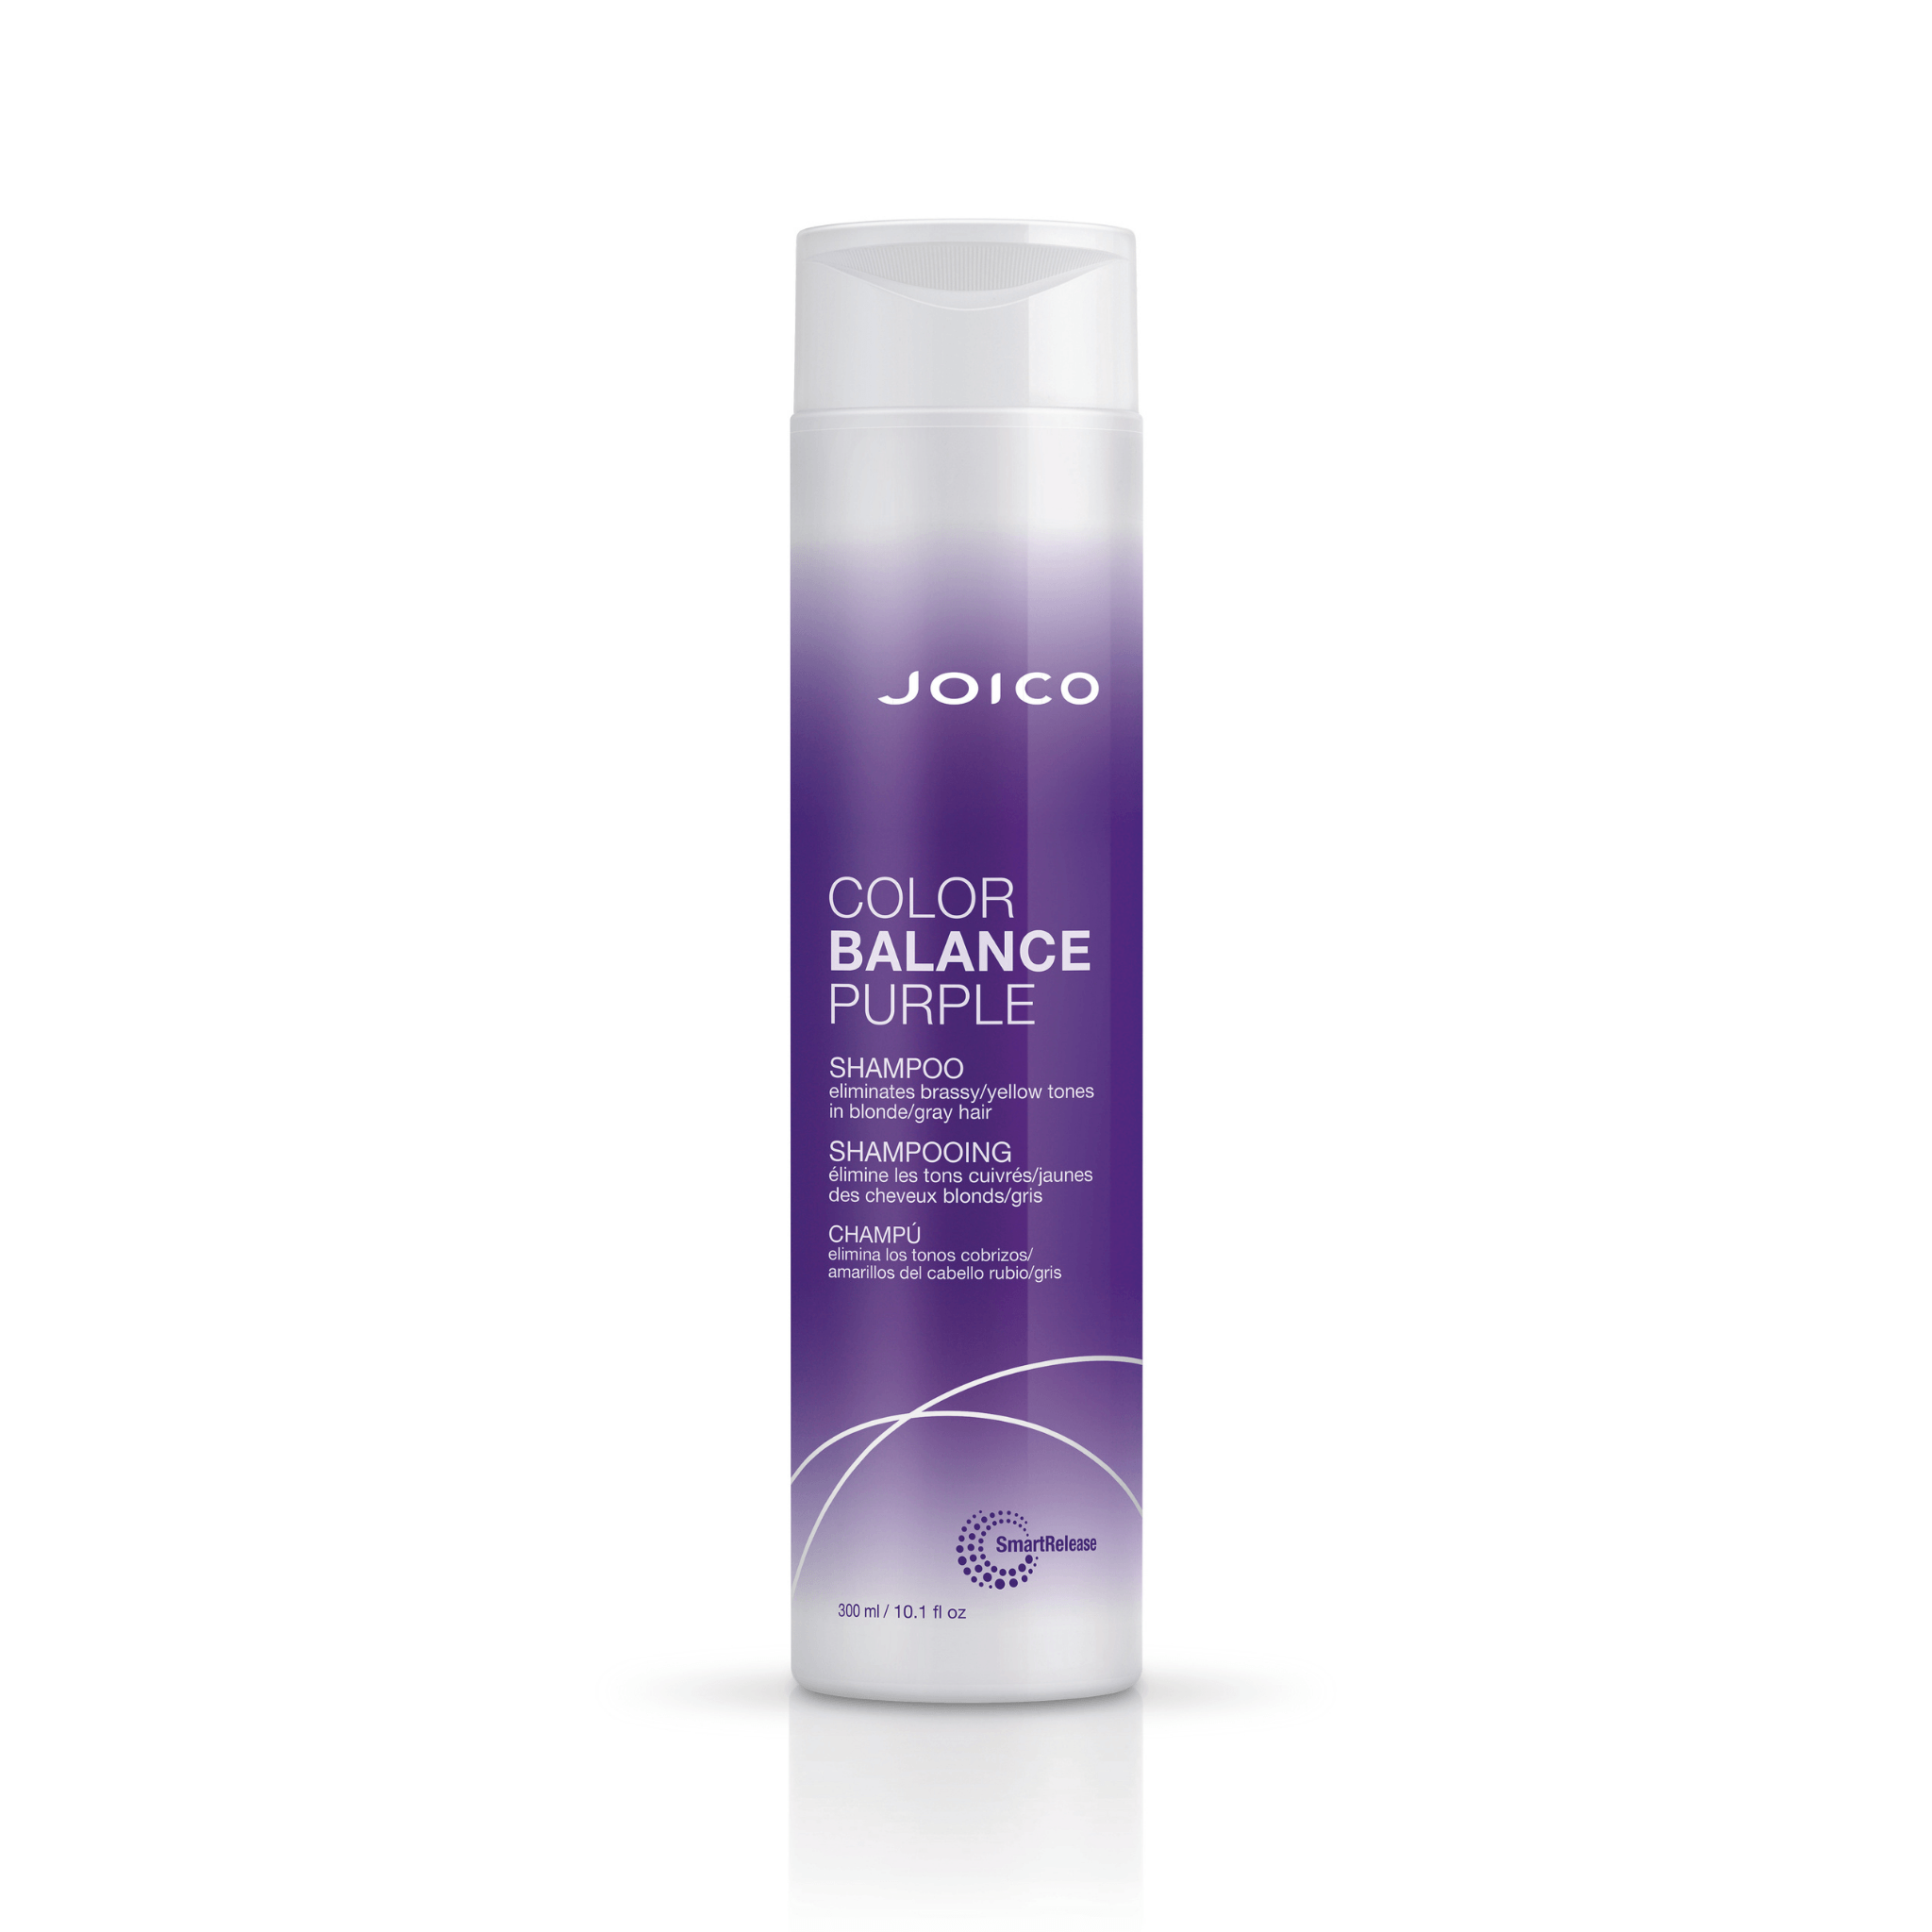 Joico. Shampoing Violet Color Balance Purple - 300ml - Concept C. Shop